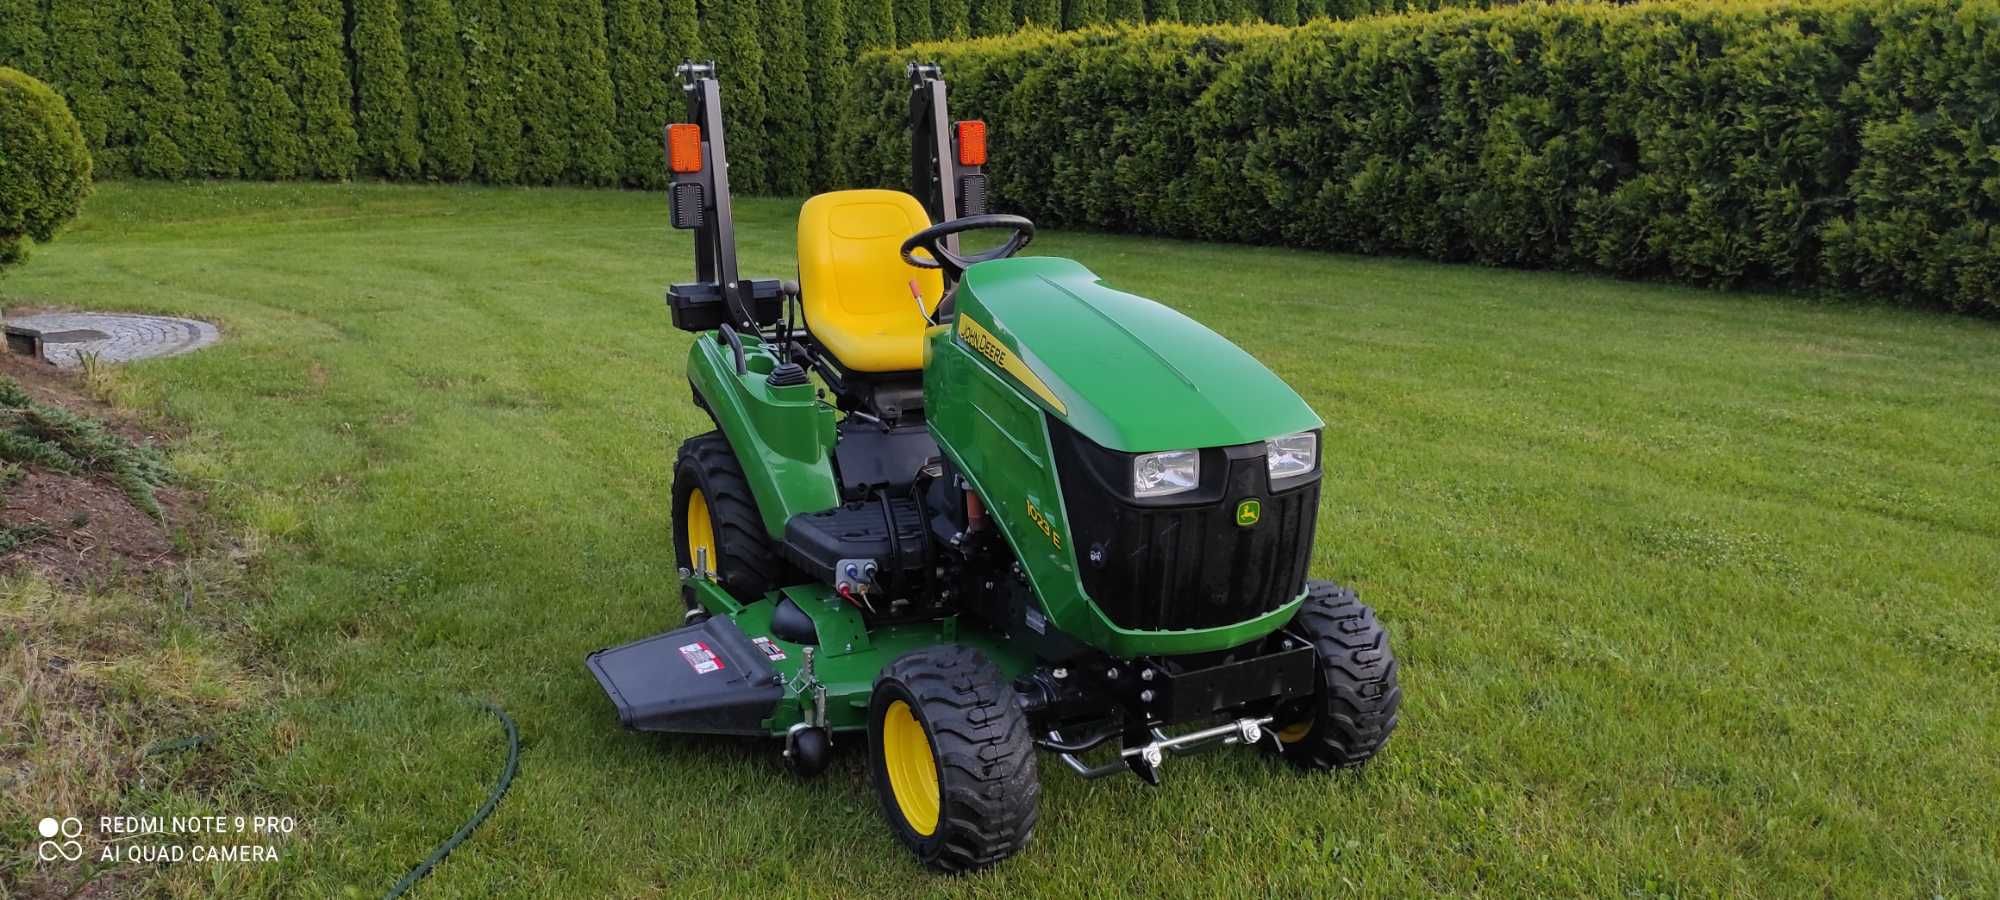 john deere 1023e traktorek ogrodowy-jak nowy 2019 rok